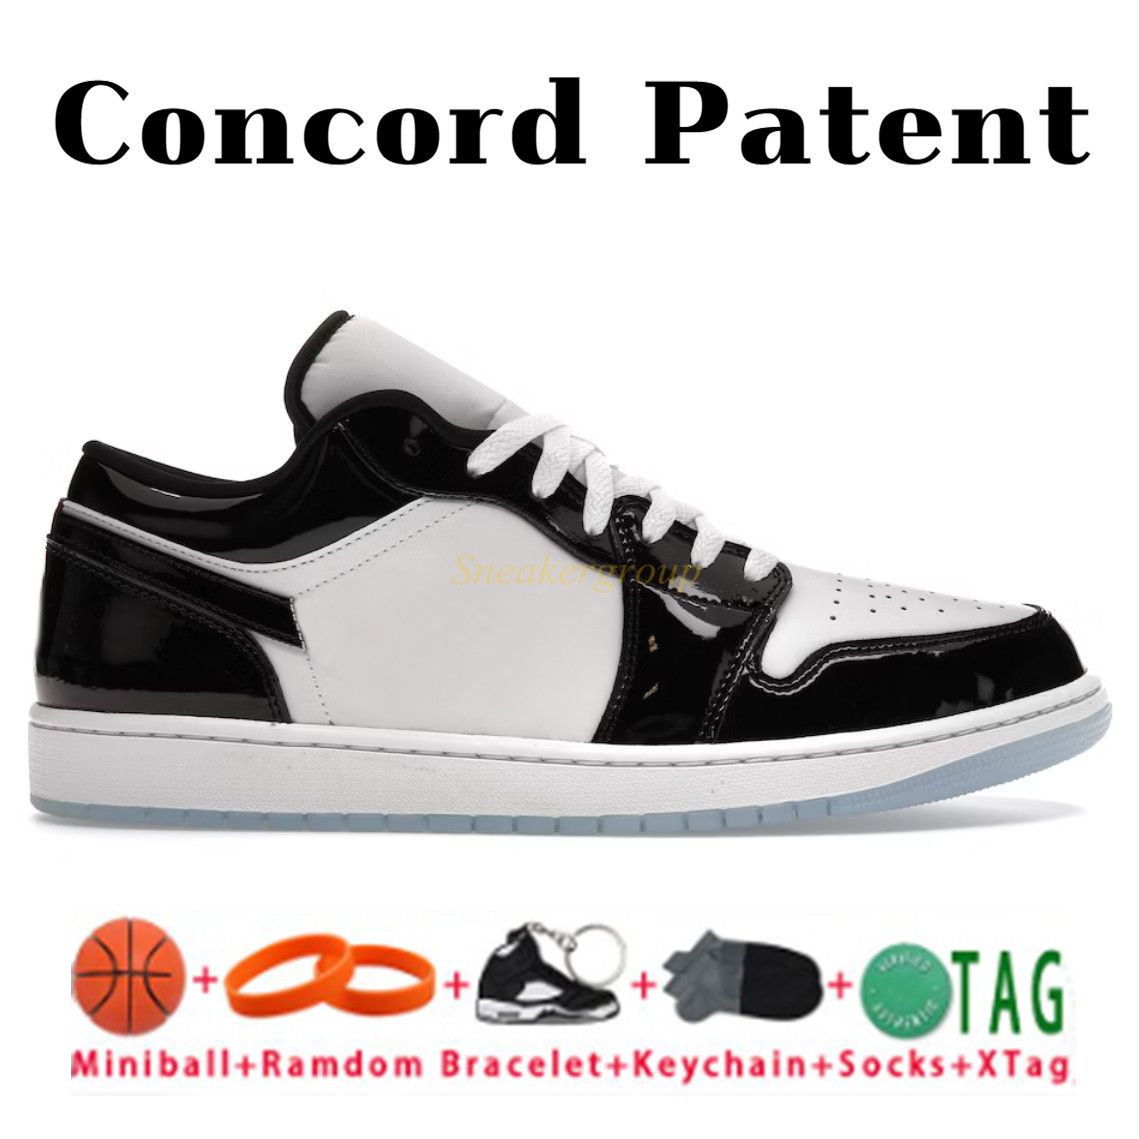 6. 콩코드 특허를 취득하십시오